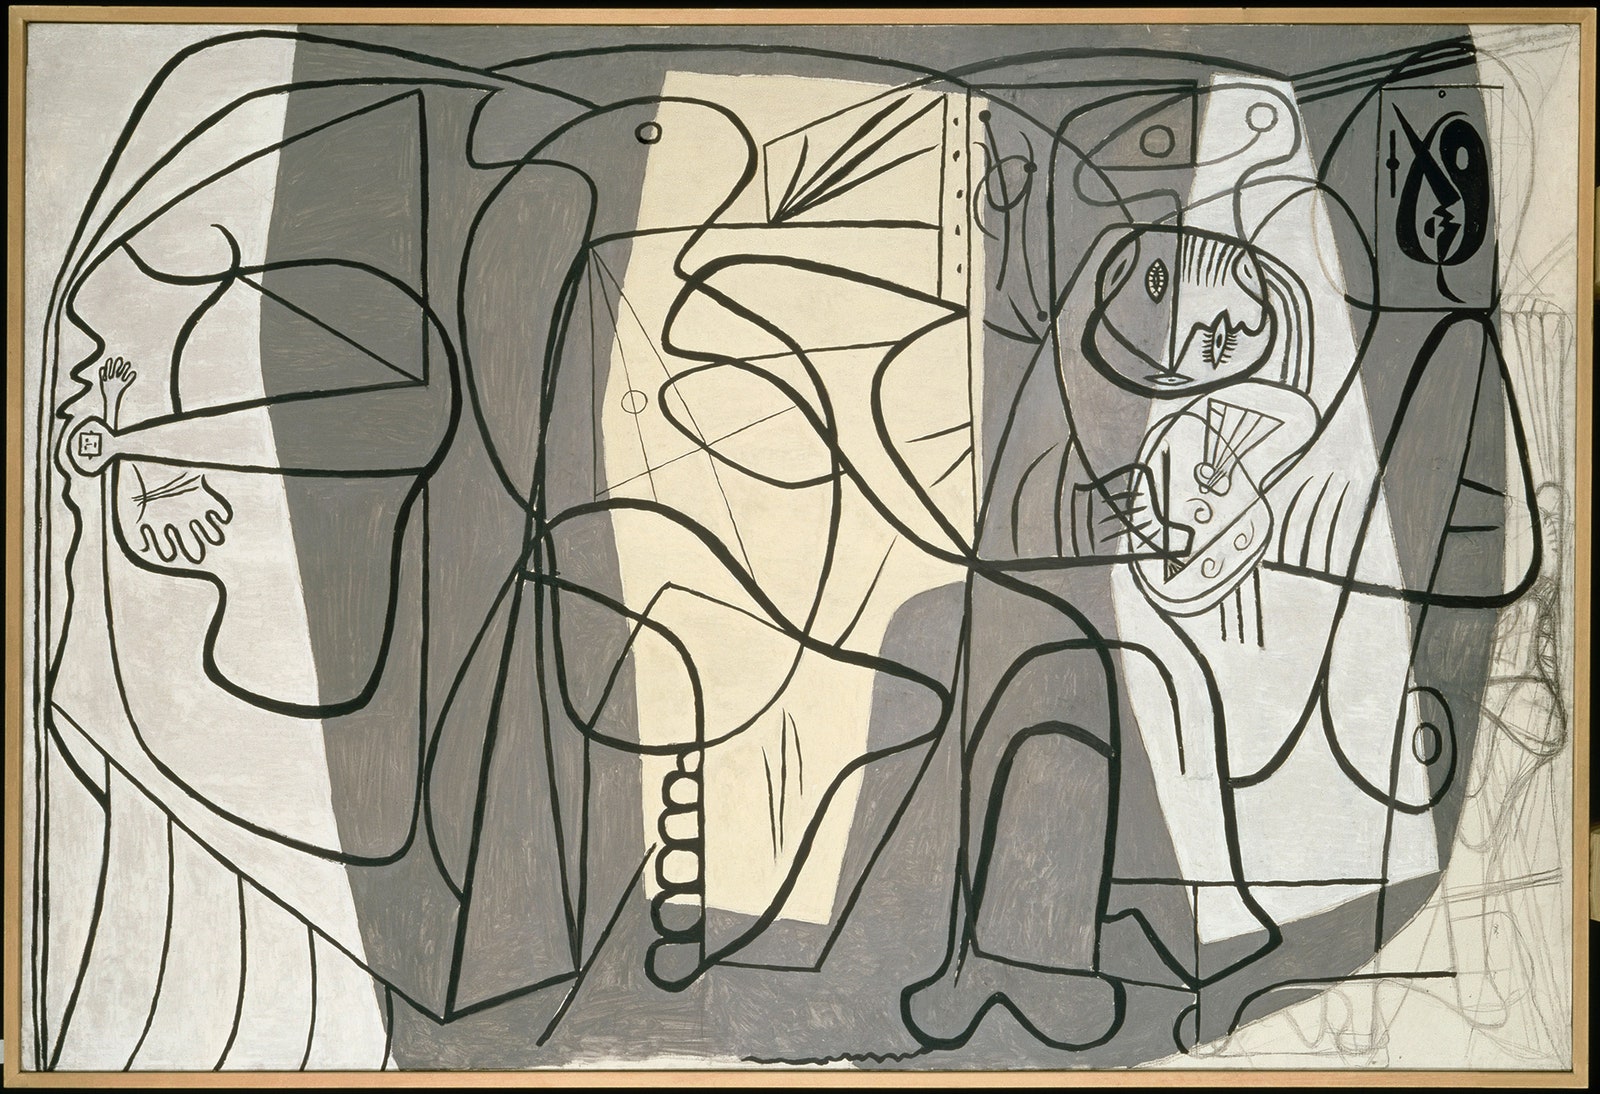 Пабло Пикассо. “Художник и его модель”. 1926. Париж Музей Пикассо. © Succession Picasso 2018